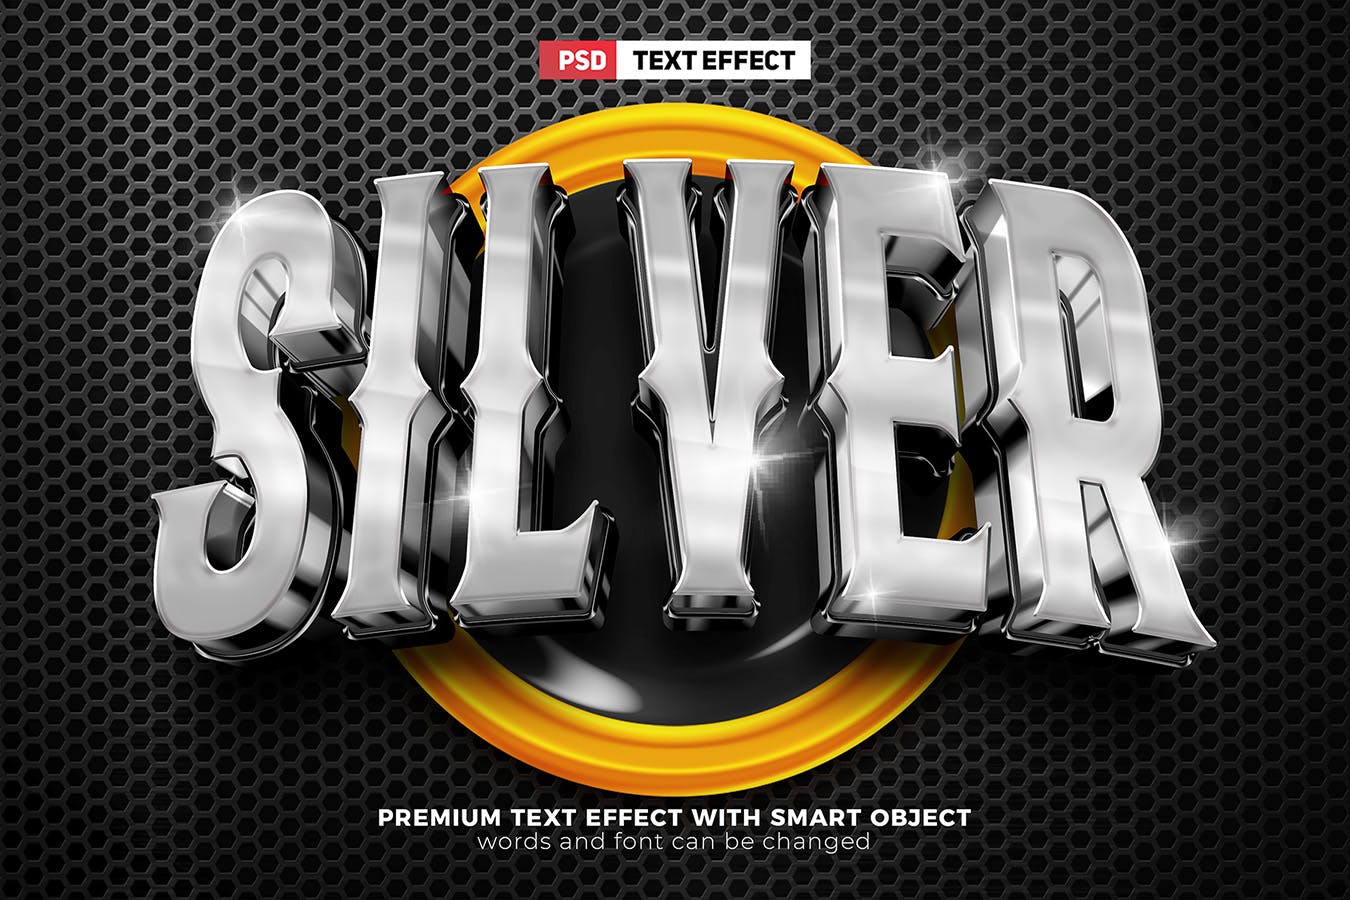 电子竞技战队3D文字效果v1 Luxury Esport Team 3D Text Effect Vol. 1 插件预设 第5张